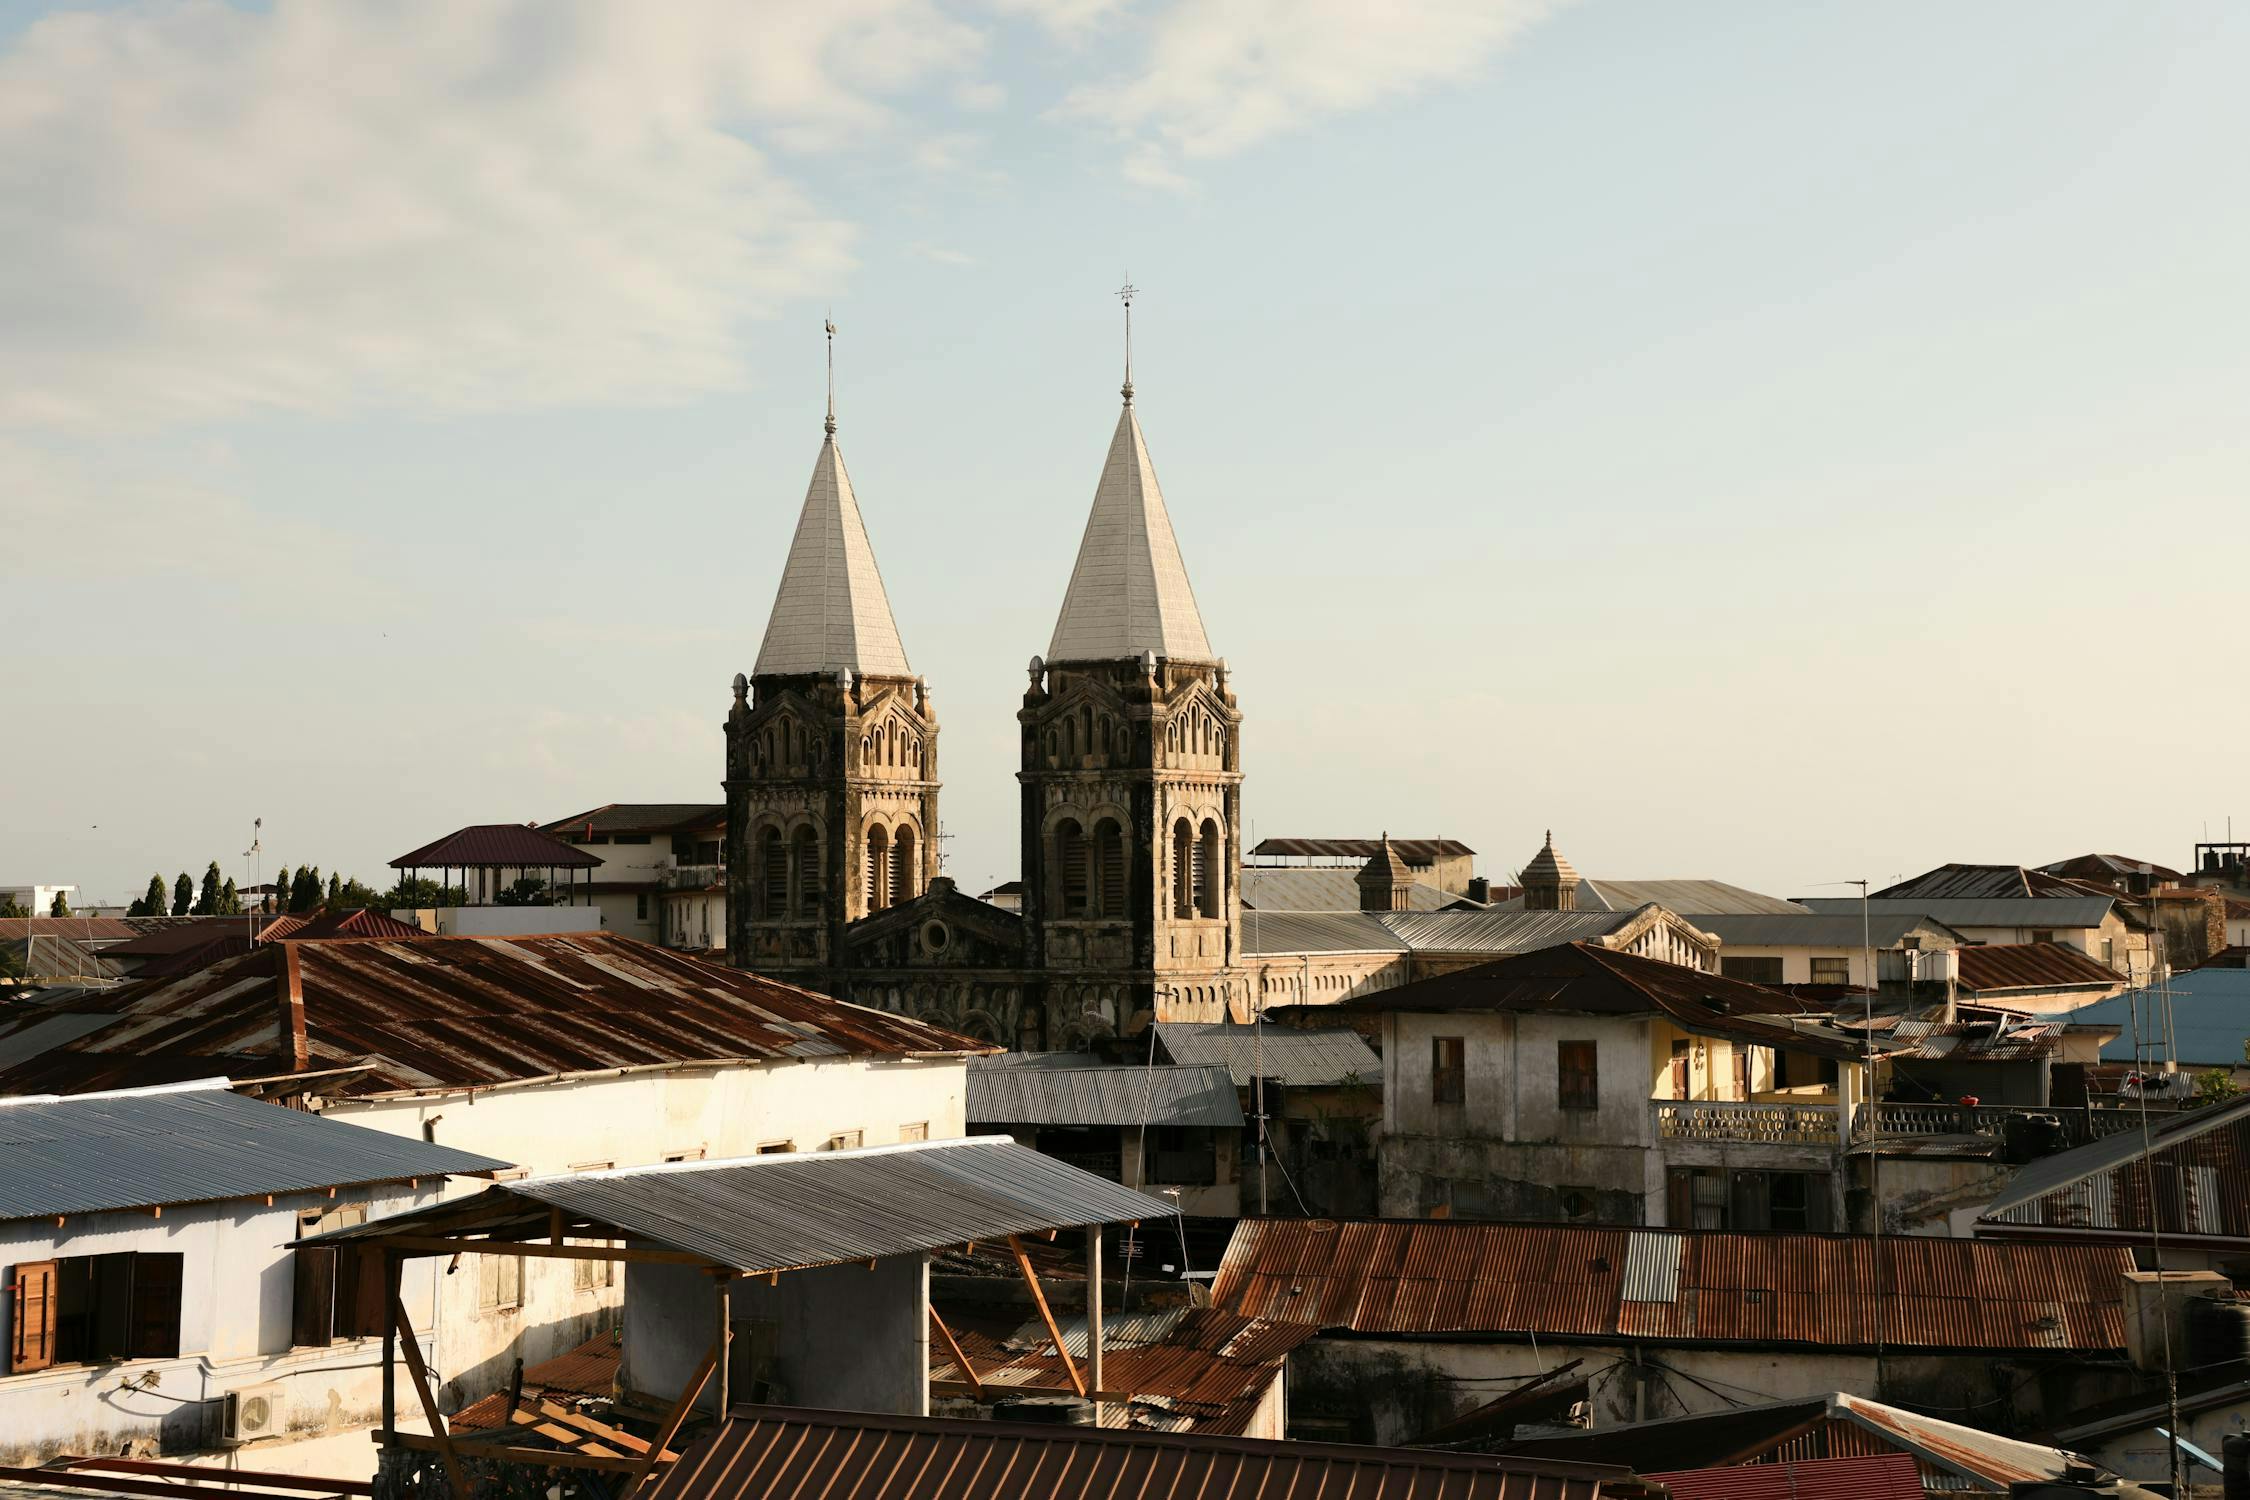 View of Zanzibar City